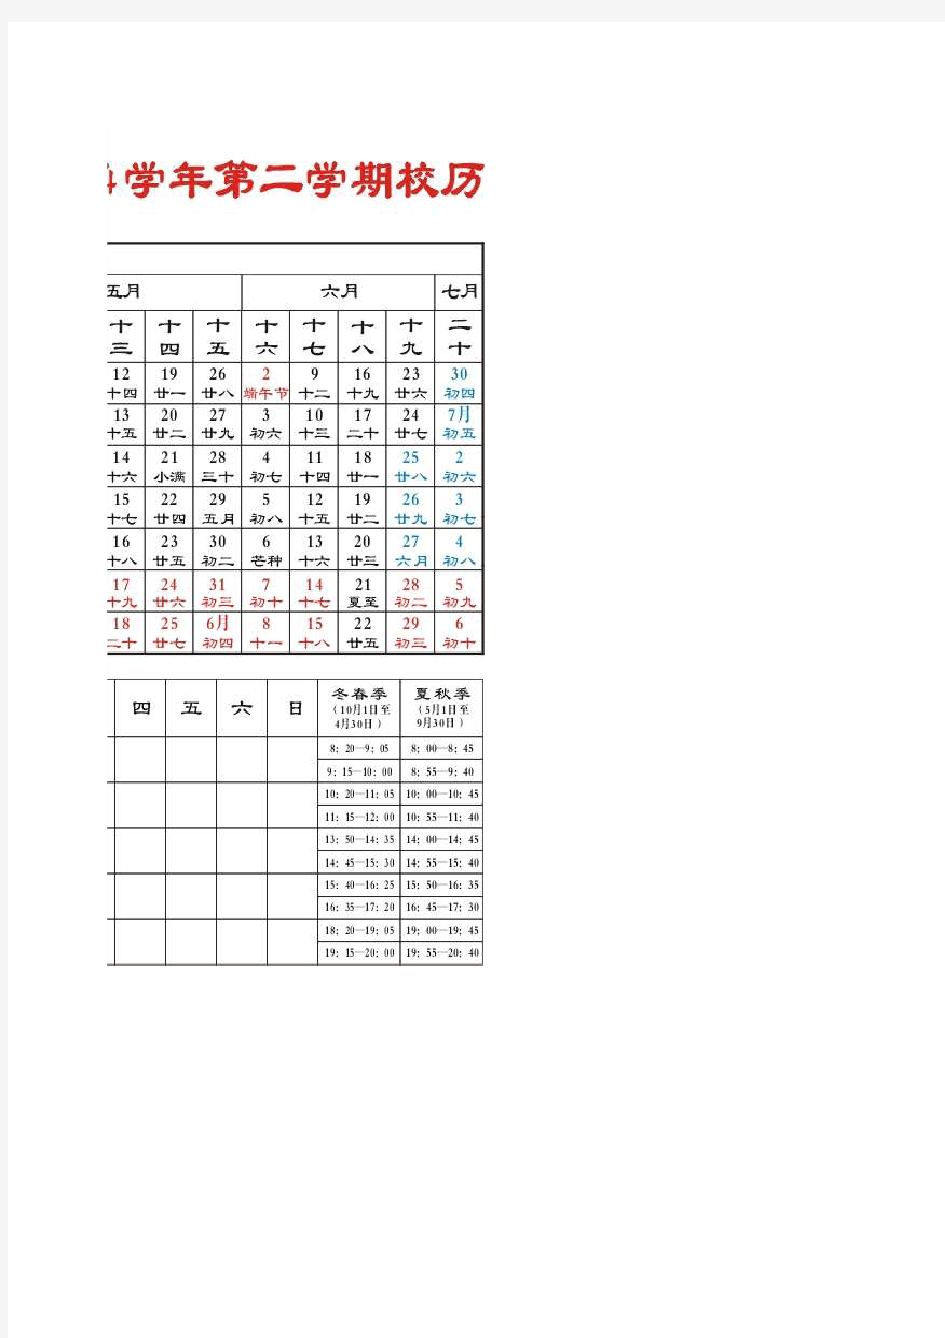 黄冈职院2014校历(时间表,放假安排)